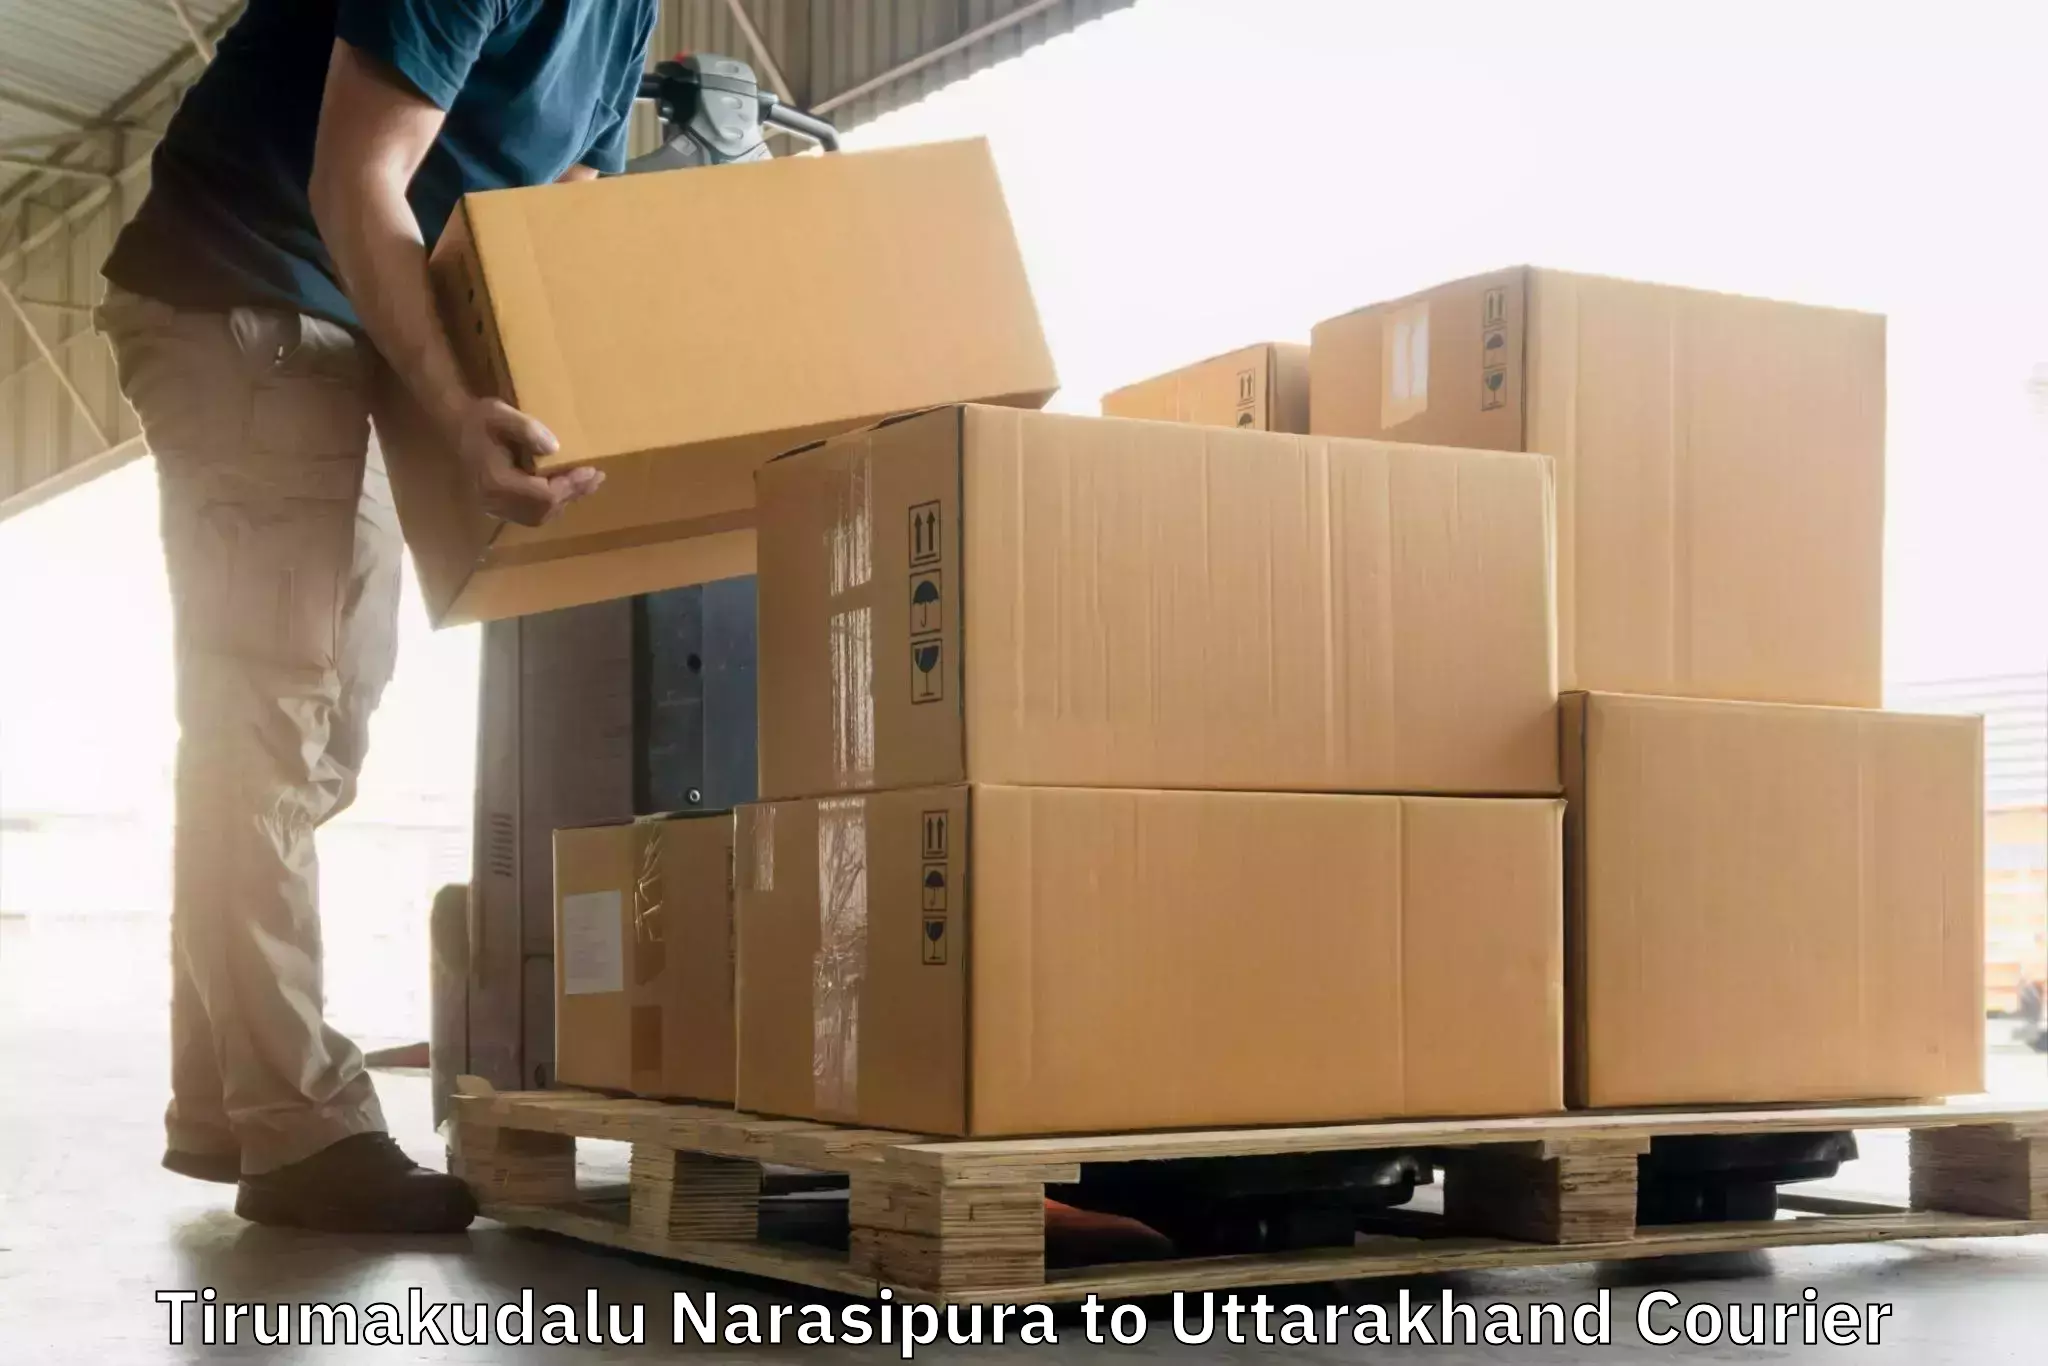 Courier insurance Tirumakudalu Narasipura to Someshwar